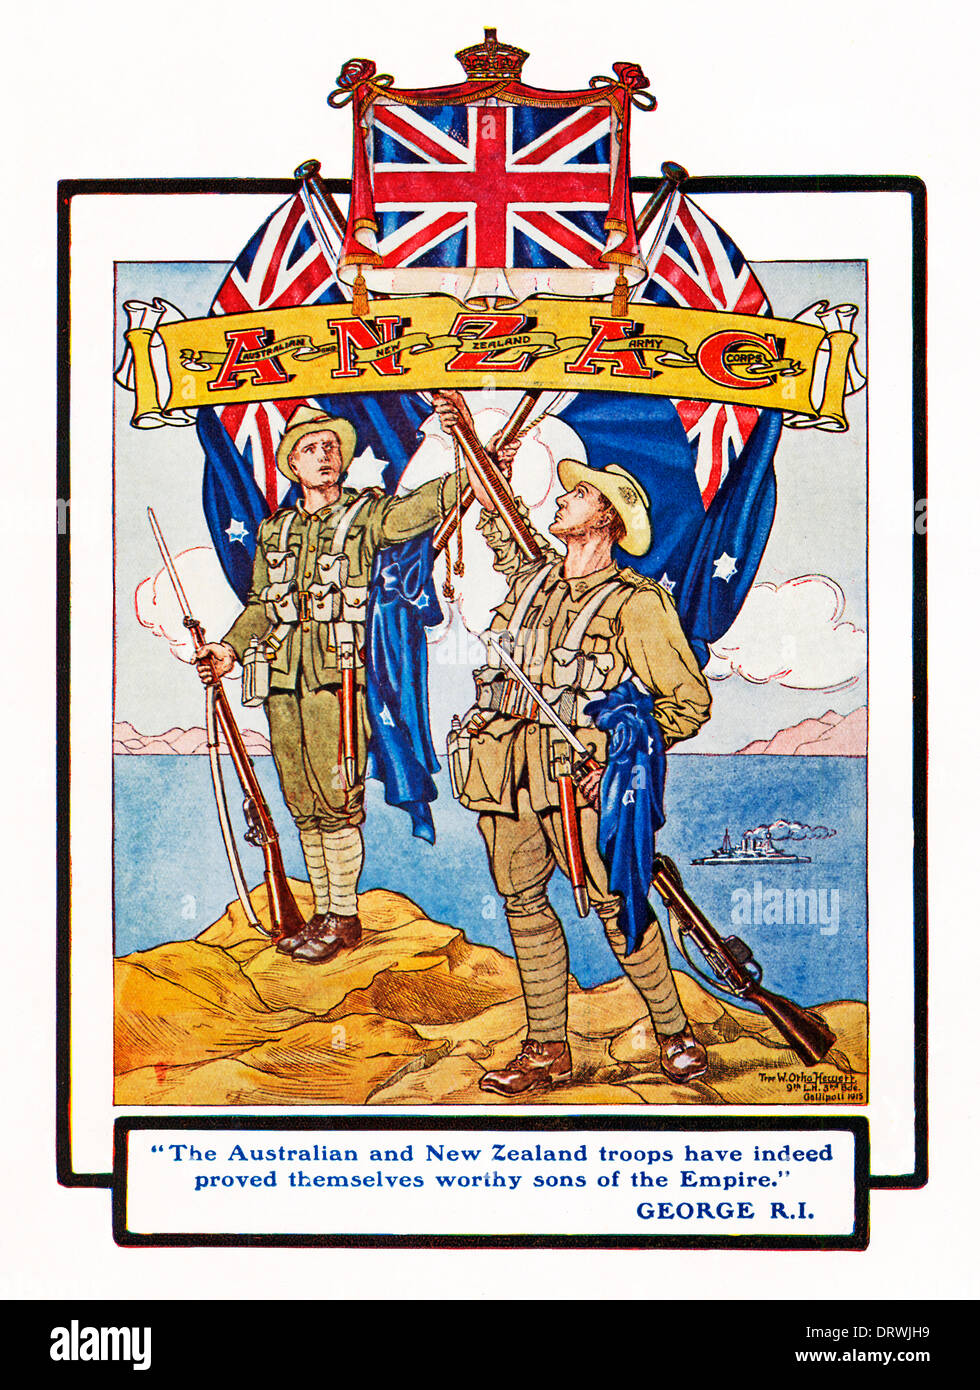 MIGW1039, Anzac à Gallipoli, hommage à l'Australian and New Zealand troupes, digne fils de l'Empire, à l'Anzac livre produit par les troupes elles-mêmes Banque D'Images